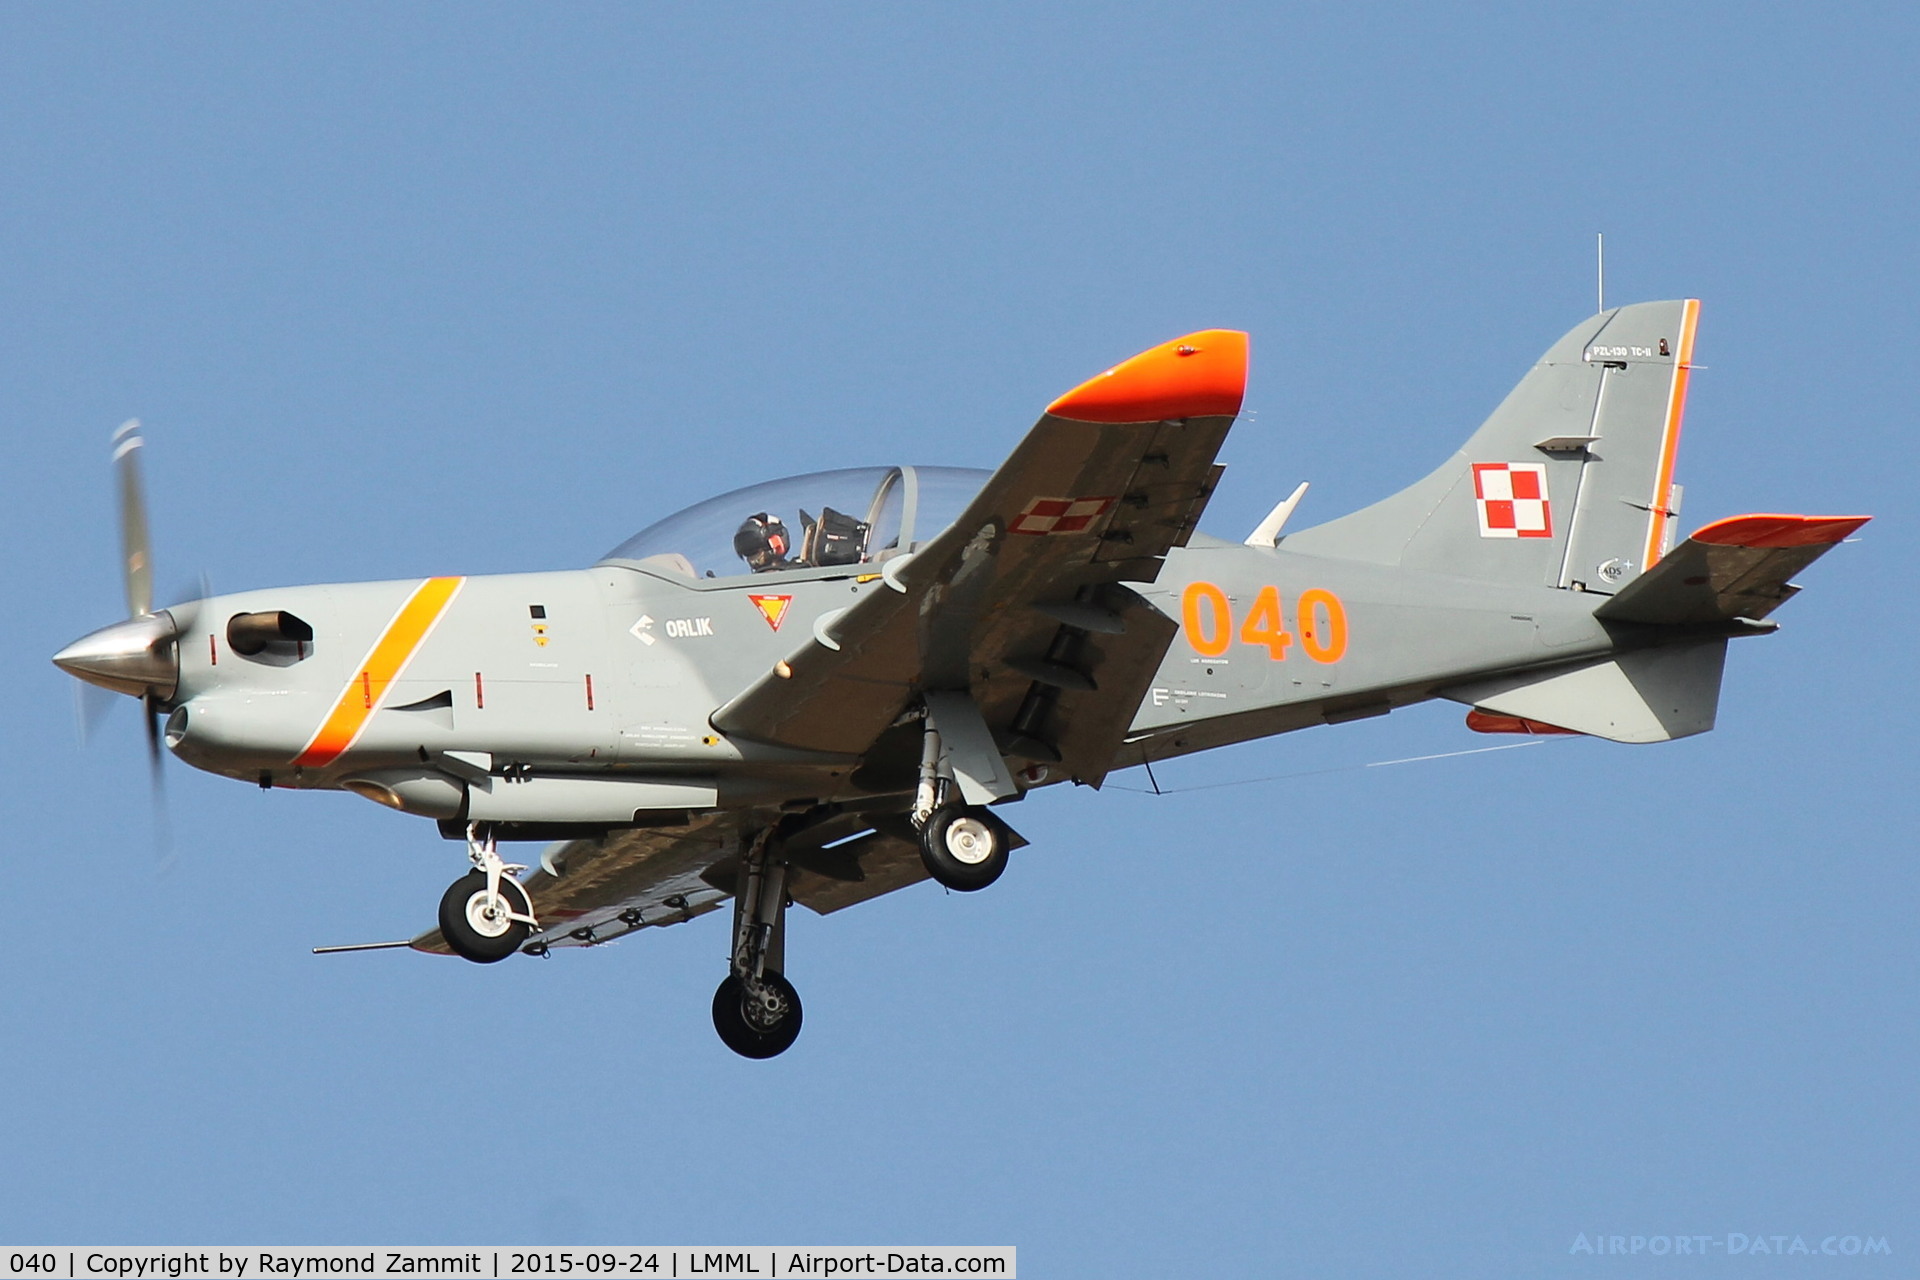 040, PZL-Okecie PZL-130TC-1 Turbo Orlik C/N 04960040, PZL-130 Orlik 040 Polish Air Force